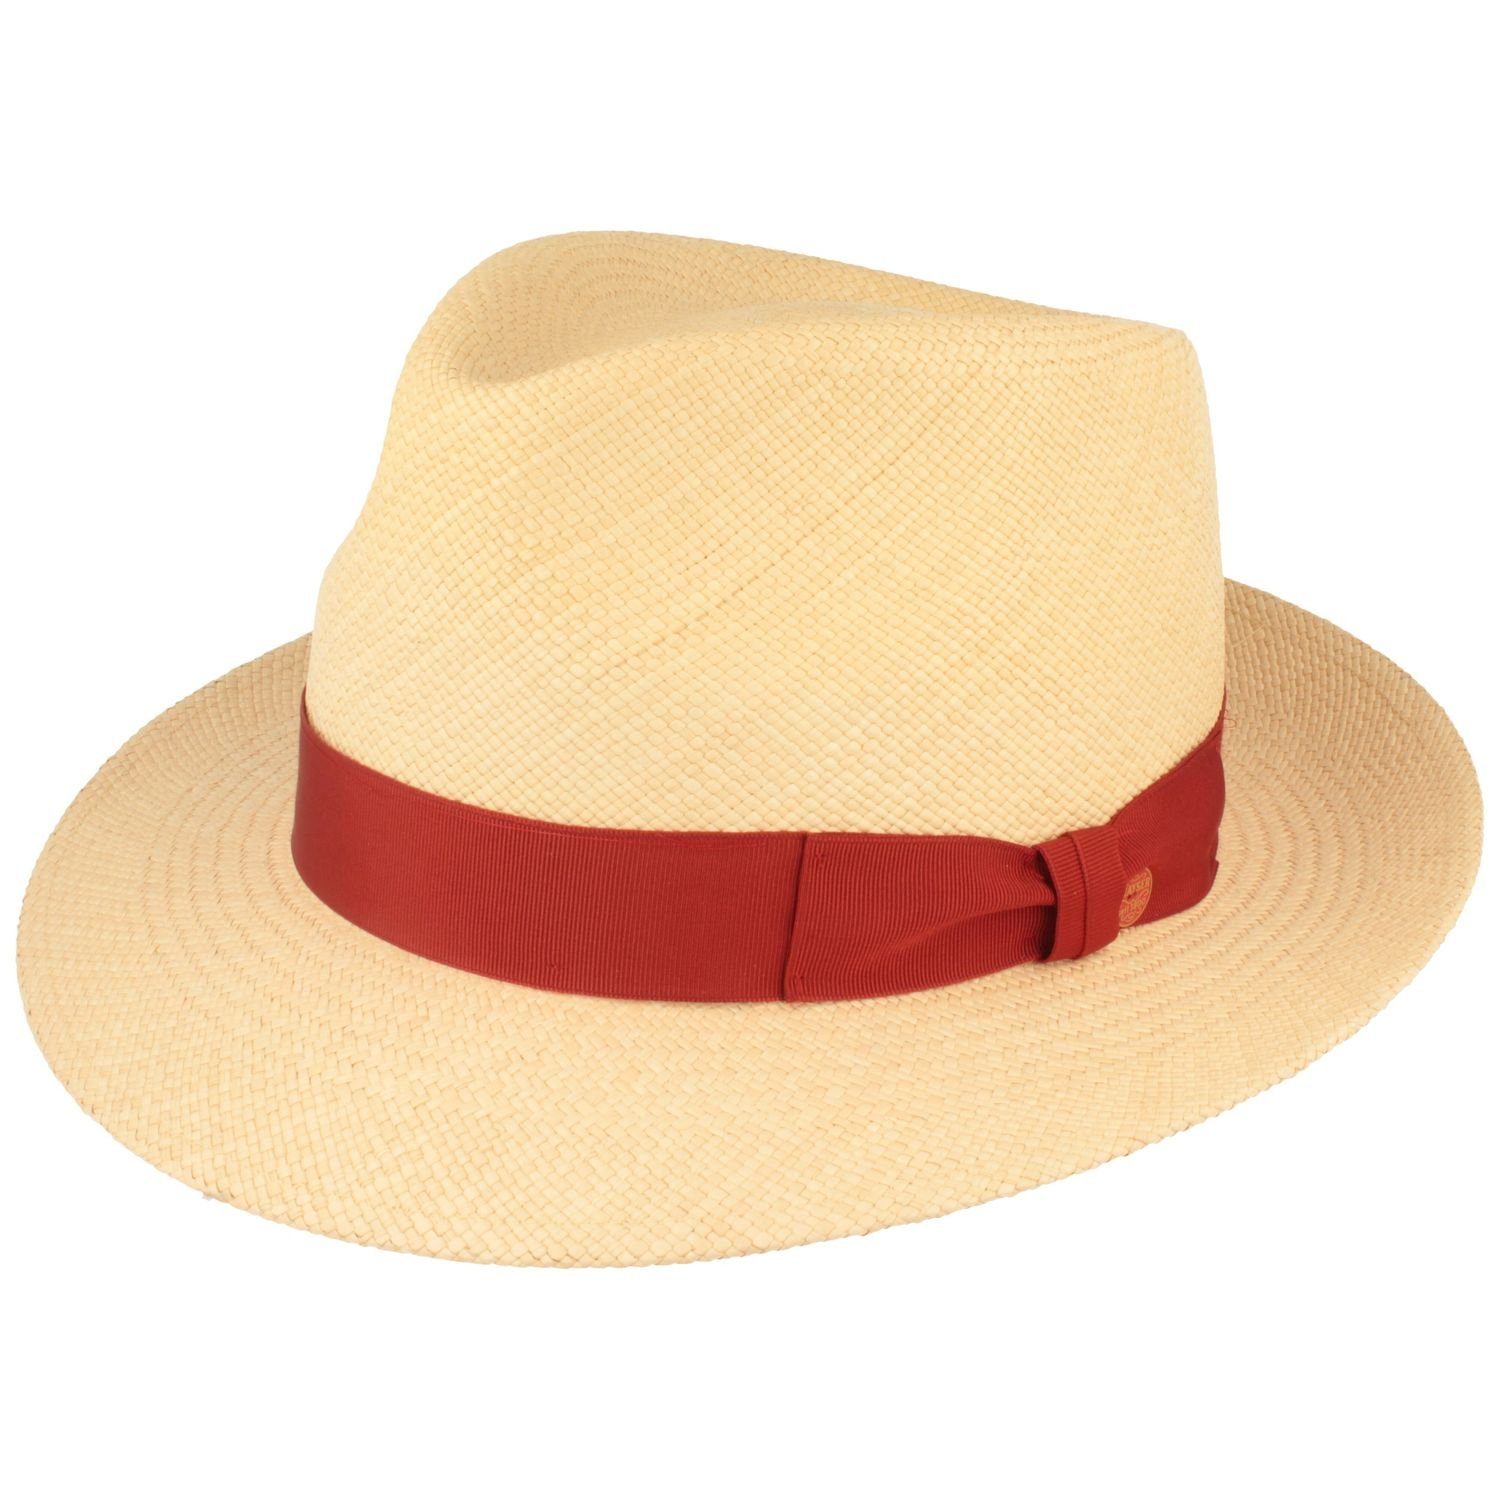 Mayser Strohhut wasserabweisender, hochwerigter Panama Hut Manuel mit UV-Schutz 80 0004 natur/1032 rot | Strohhüte